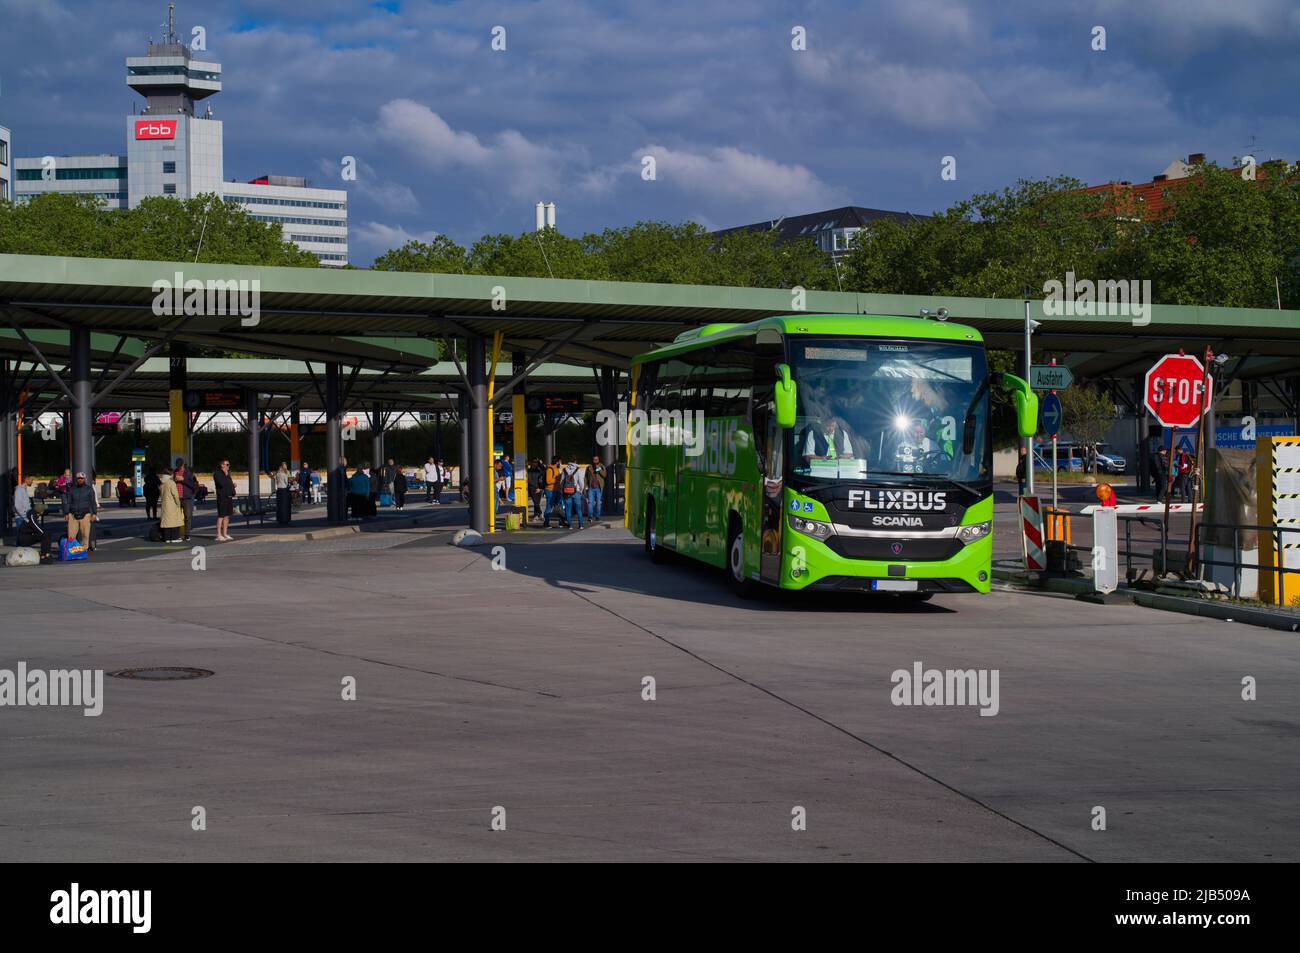 Gare routière centrale ZOB, Flixbus Reisebus Messedamm, derrière elle RBB, Masurenallee, Westend, Charlottenburg, Berlin, Allemagne Banque D'Images